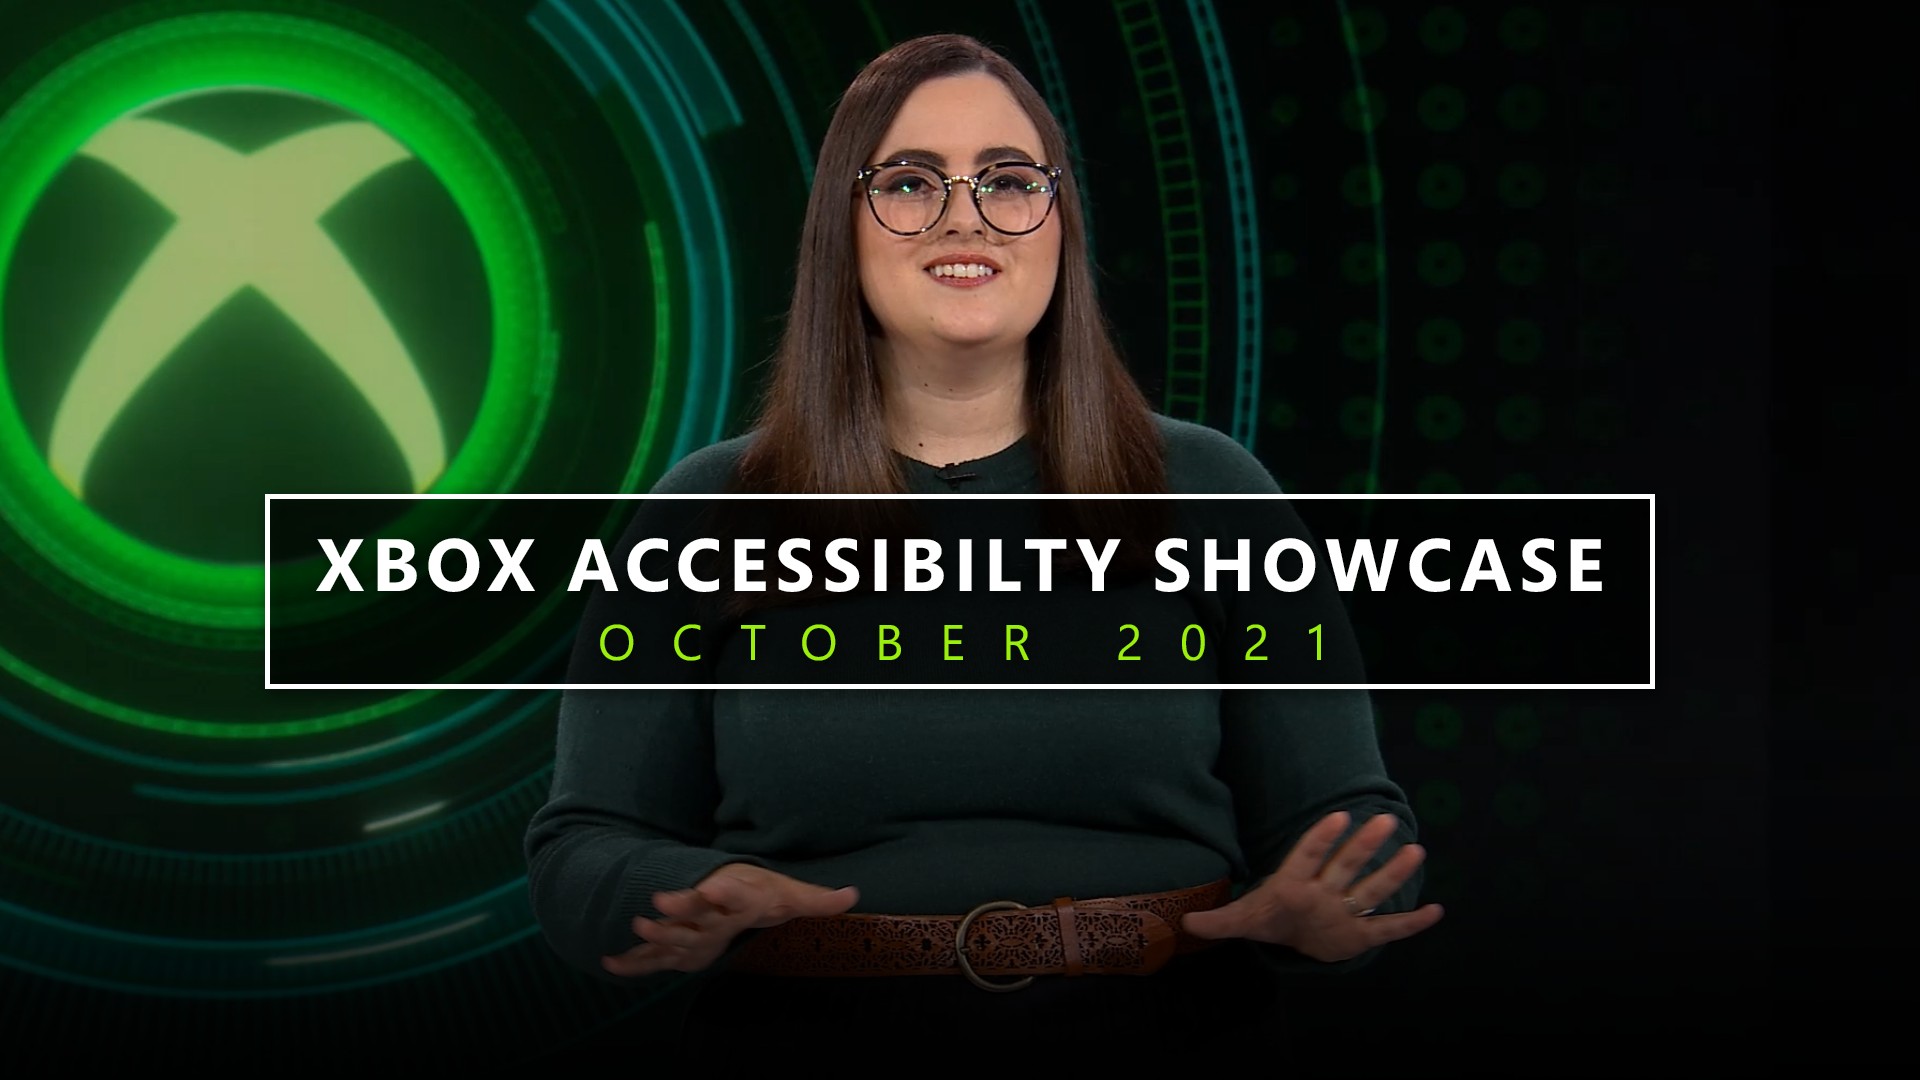 Video For Xbox celebra a comunidade de jogadores com deficiência com novas atualizações de acessibilidade